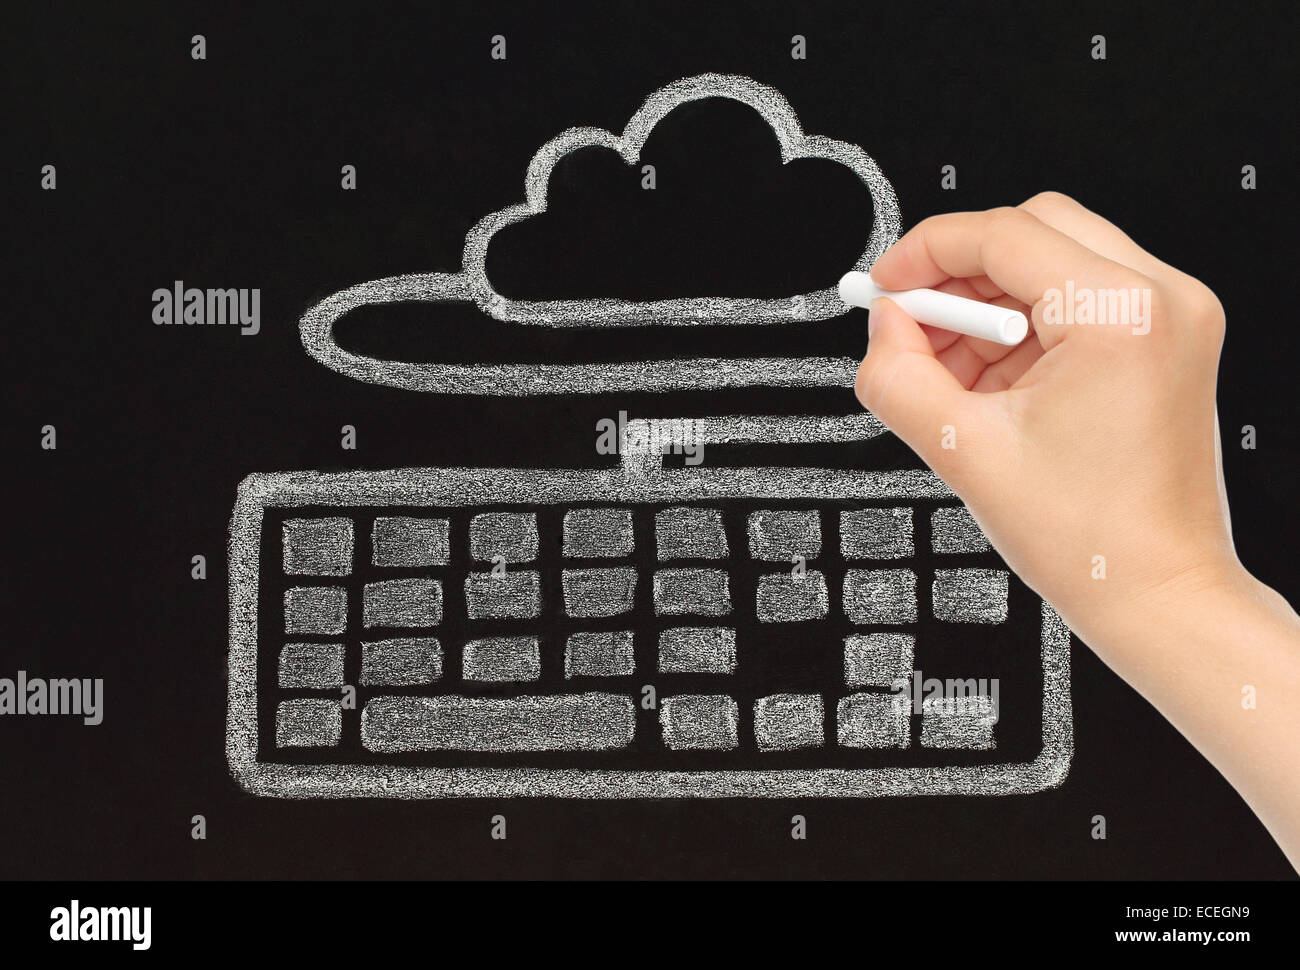 Dibujo a mano con tiza teclado conectado a la nube, cloud computing concepto Foto de stock